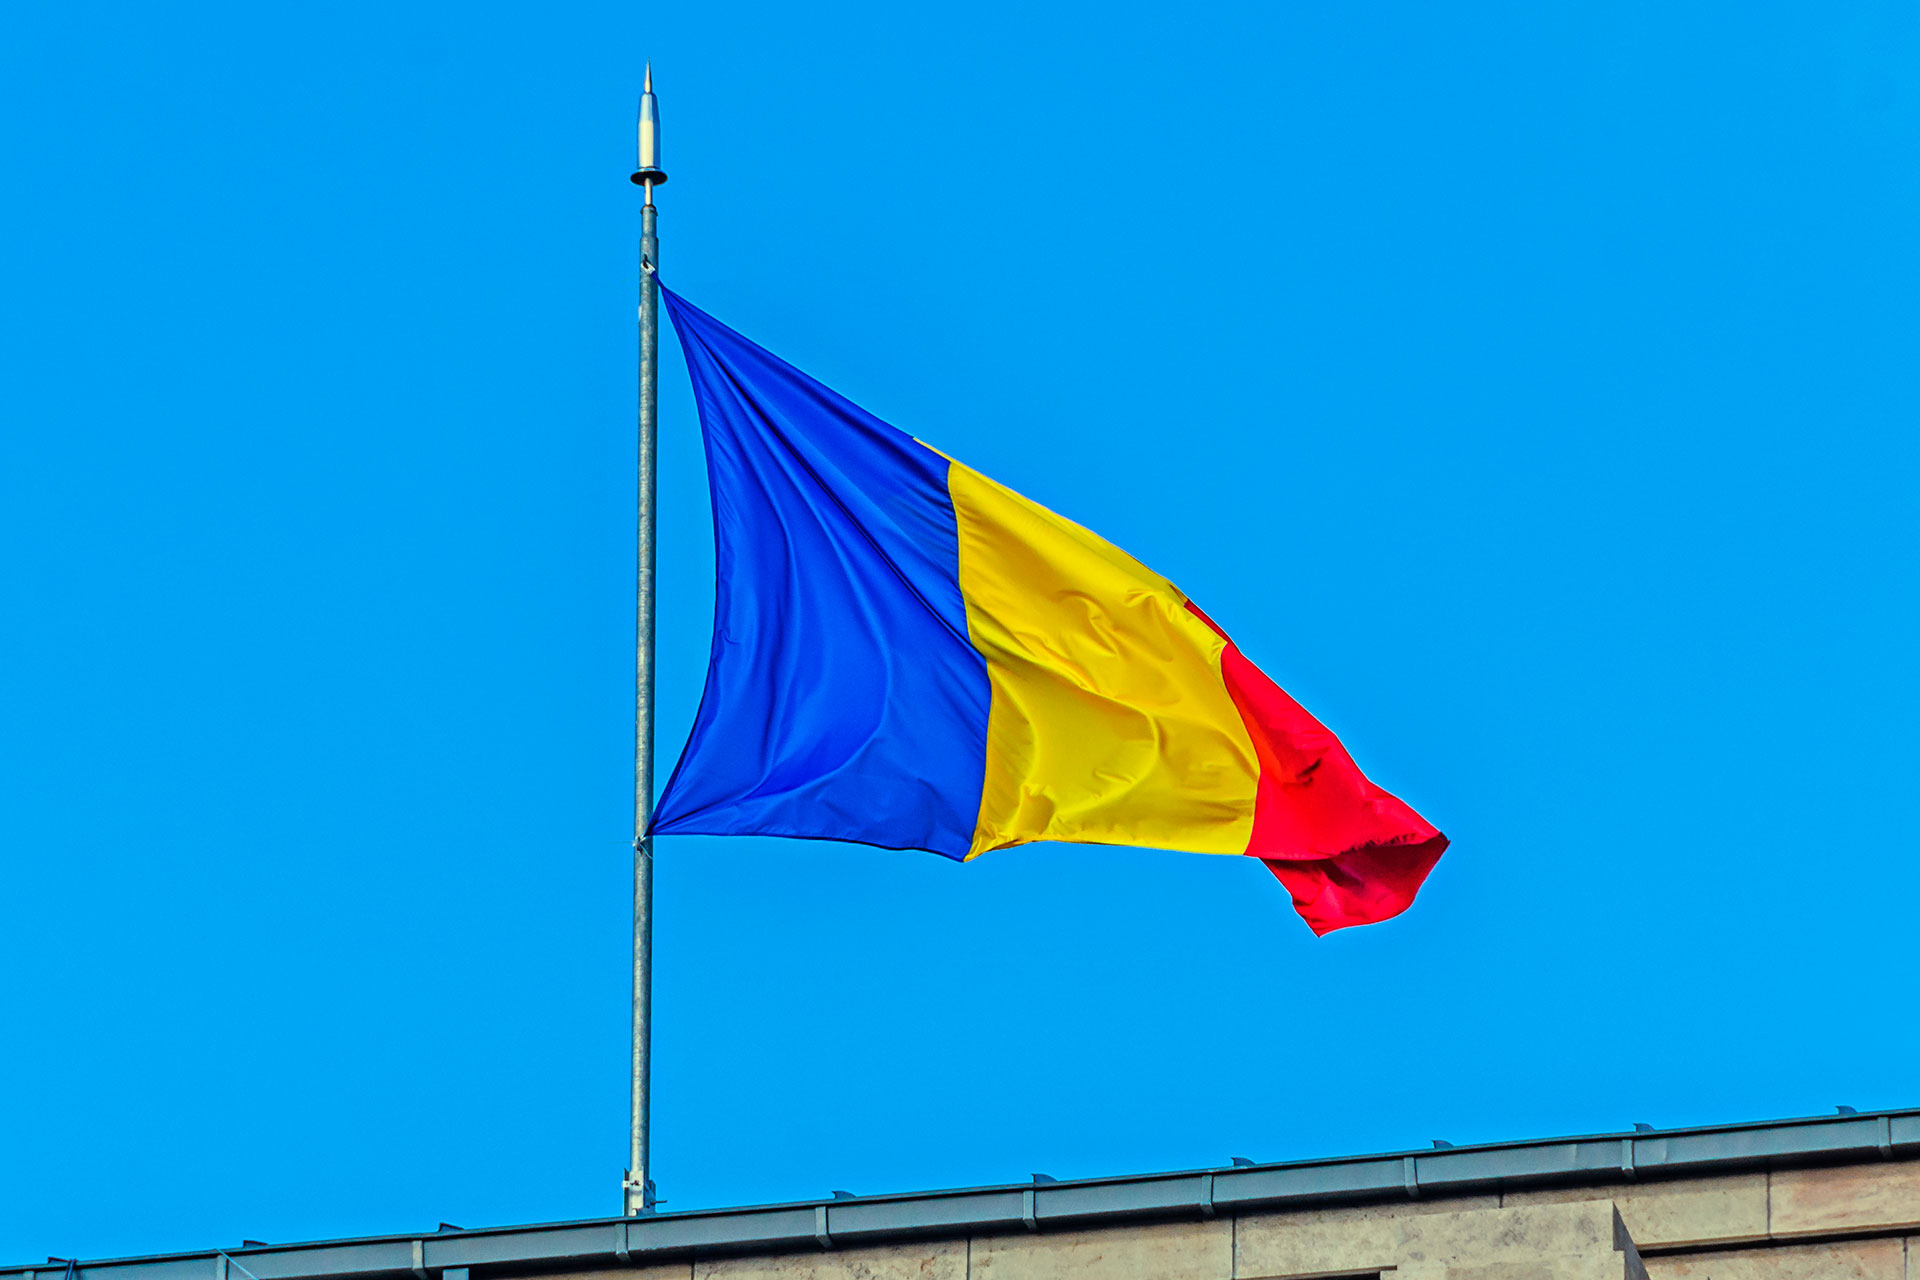 Как получить гражданство Румынии